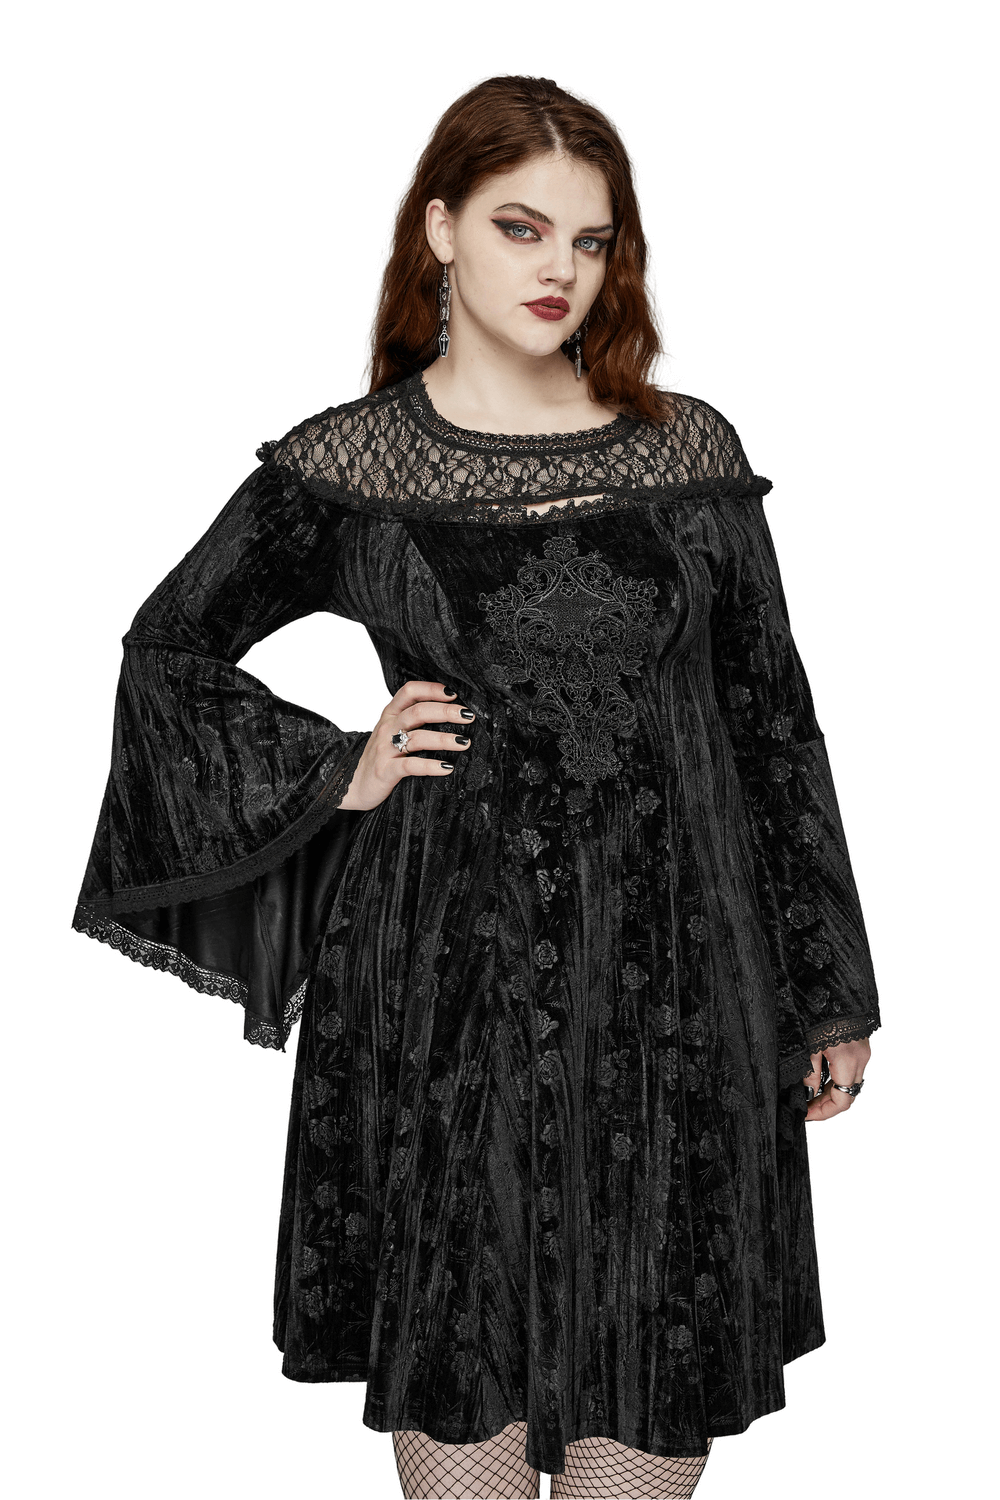 Black Lace Velvet Roses Dress - Gothic Elegance